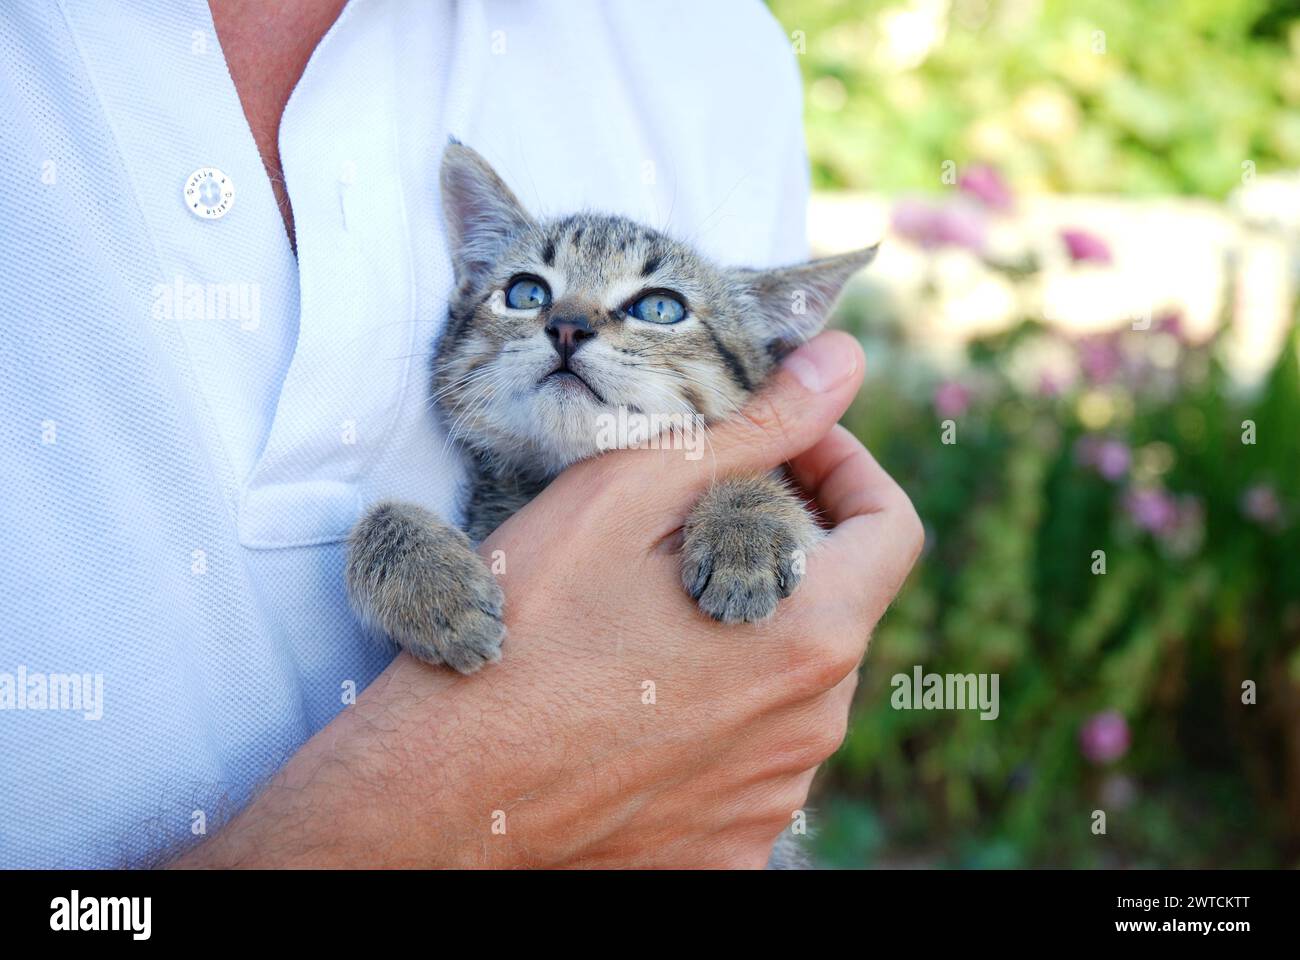 Piccola tabby cat in mano d'uomo. Foto Stock